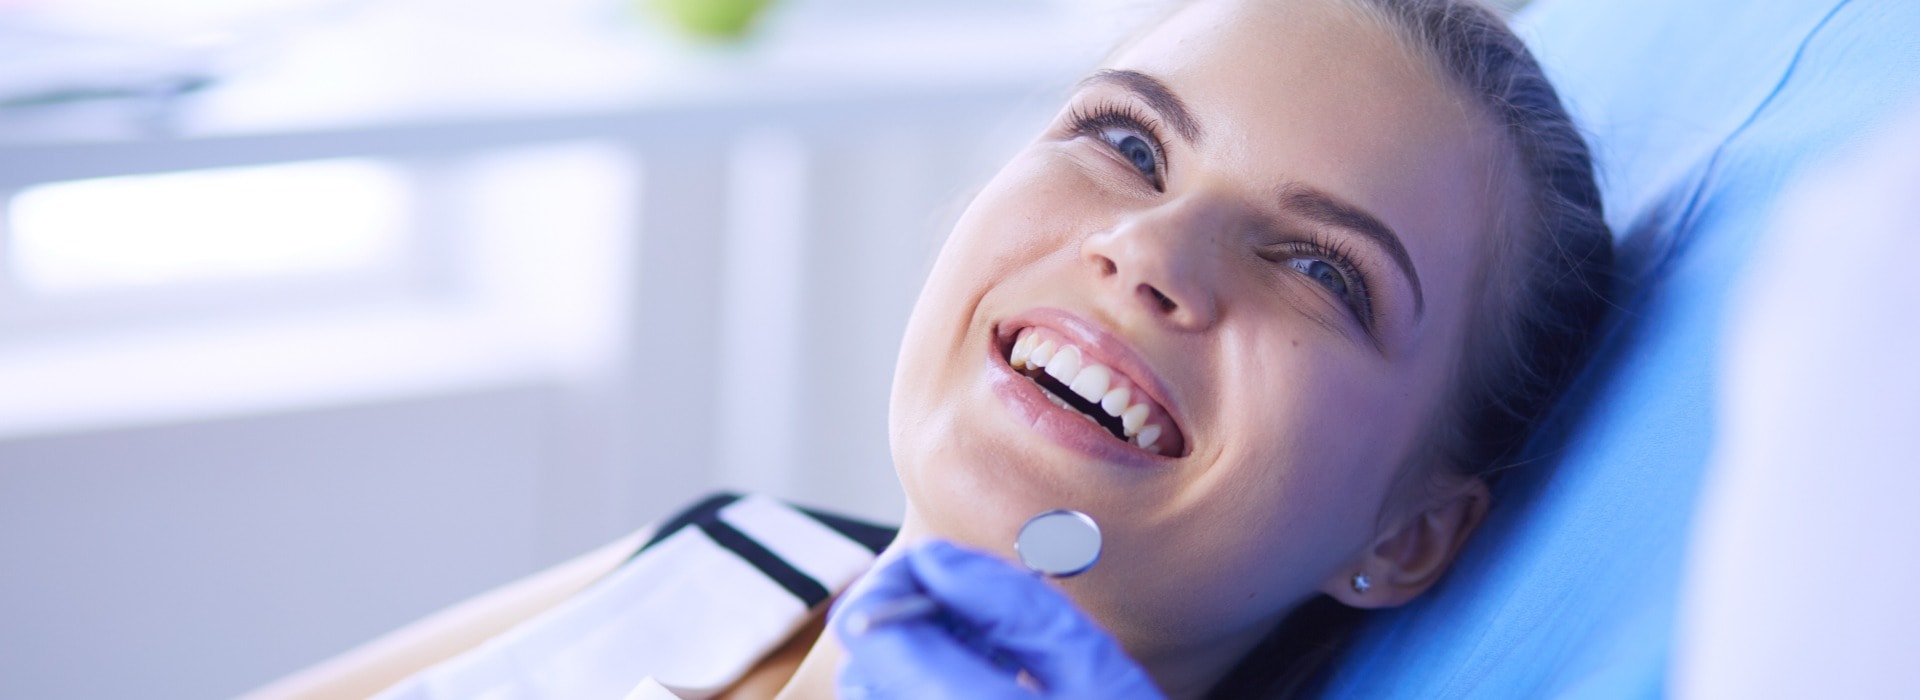 Junge weibliche Patientin mit hübschem Lächeln bei der zahnärztlichen Untersuchung in einer Zahnarztpraxis.